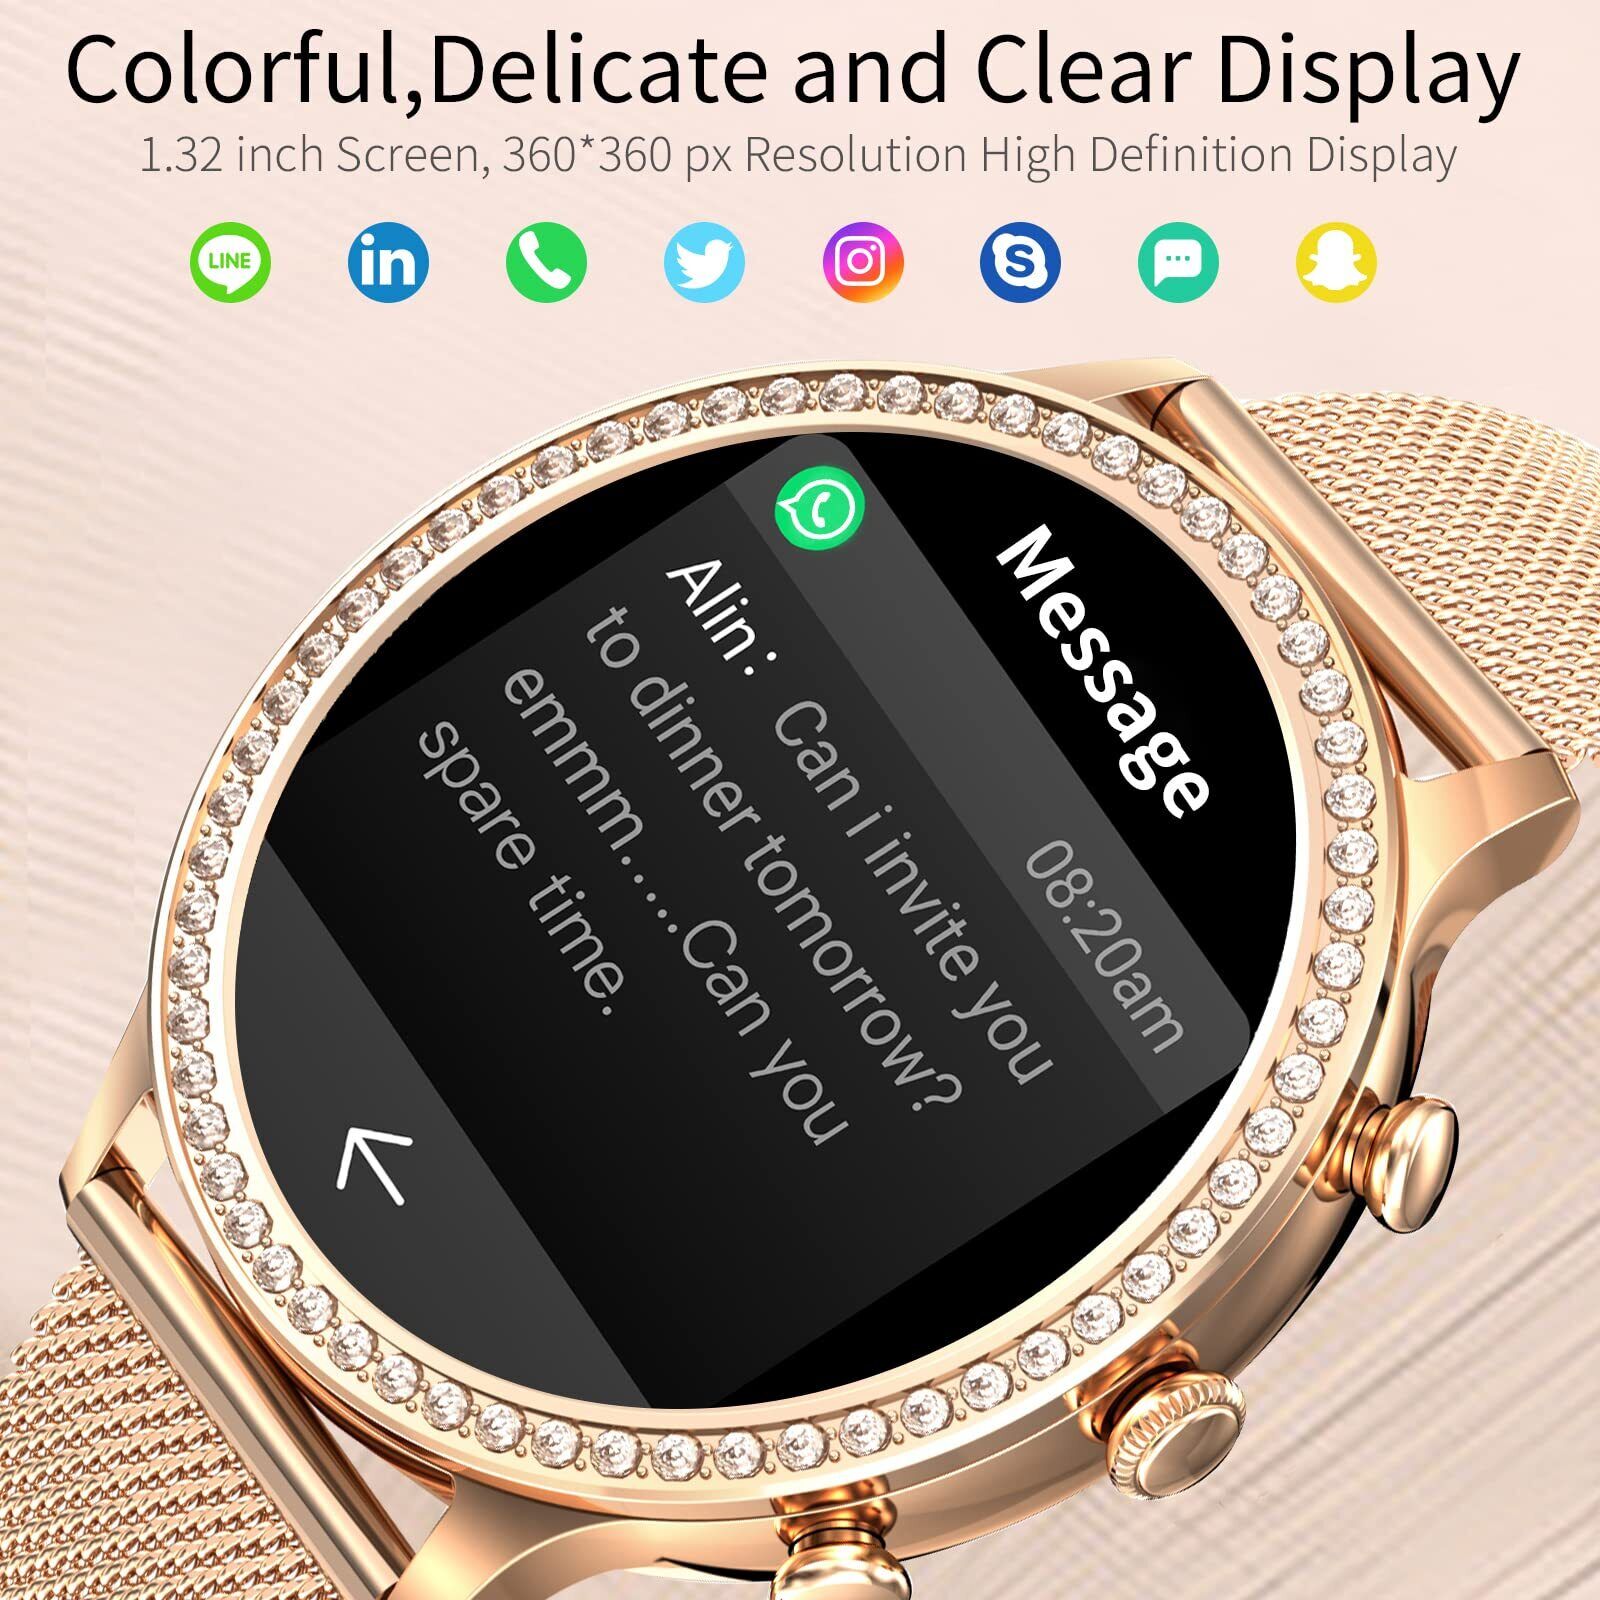 Damen Smartwatch Bluetooth Armband Uhr Fitness für iOS iPhone Android Samsung